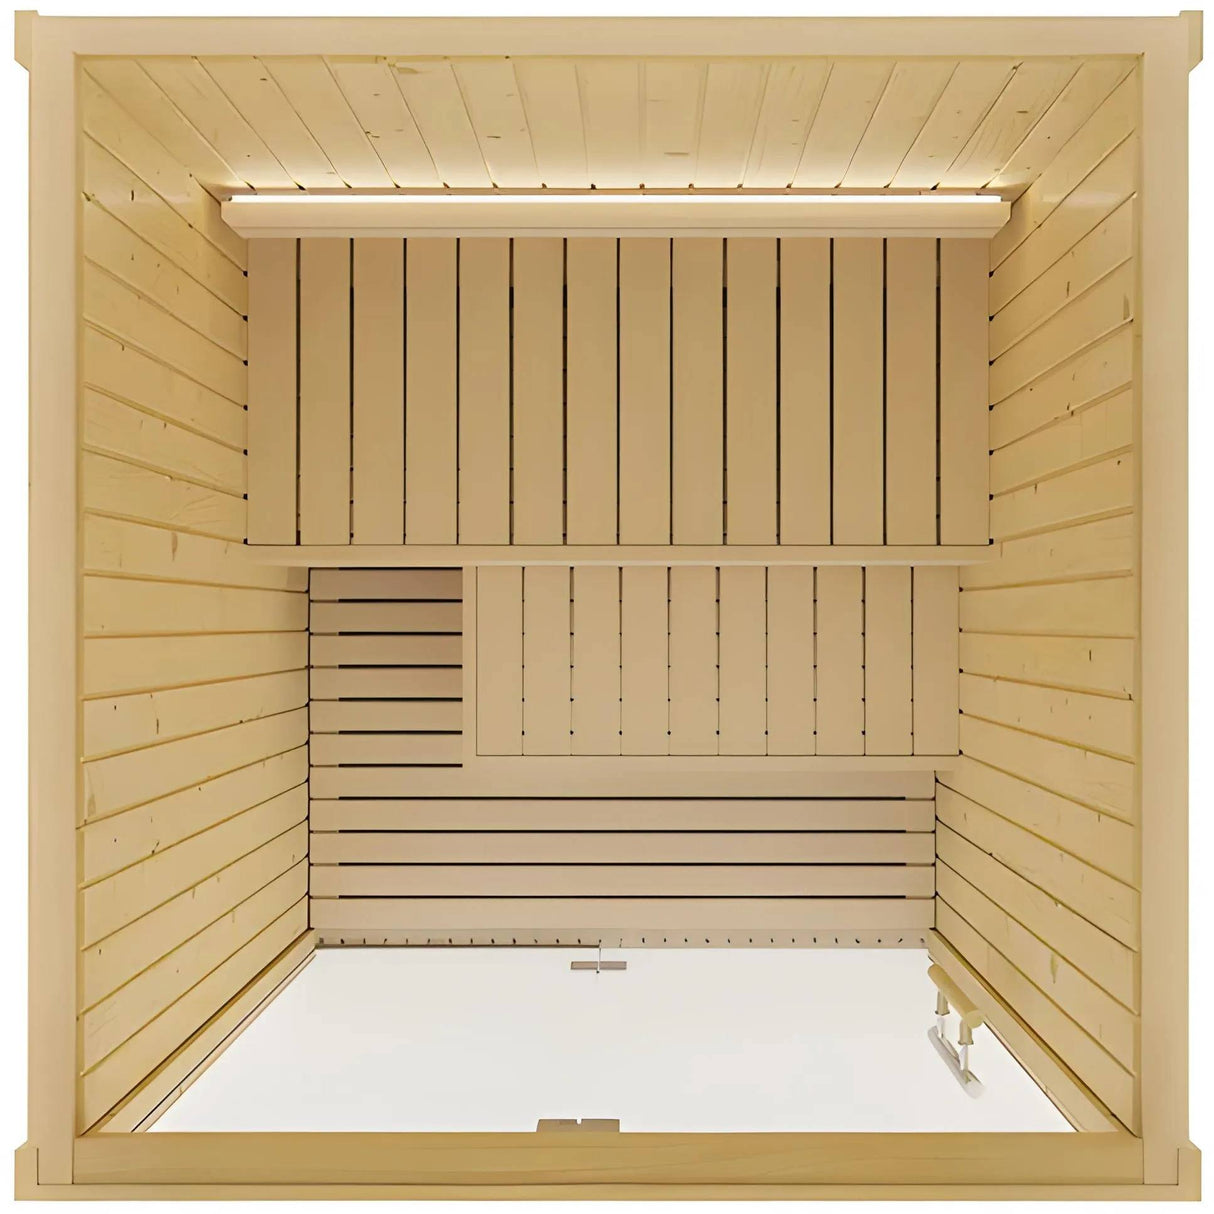 ZiahCare's SaunaLife Model X2 Indoor Home Sauna Kit Mockup Image 3